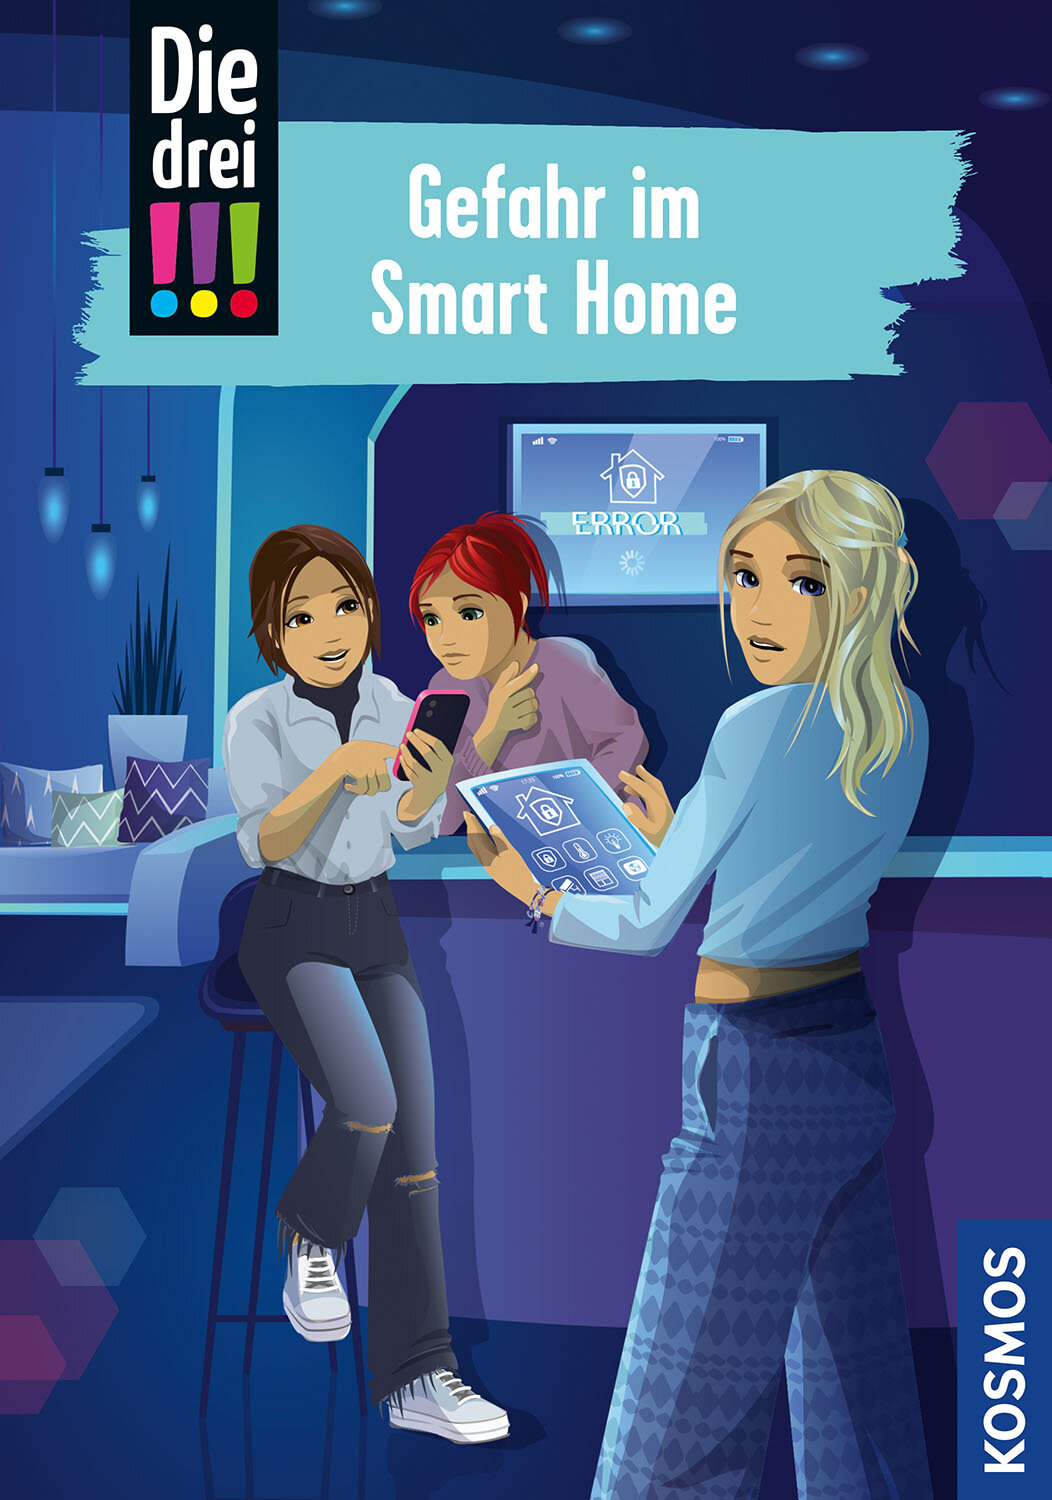 Die drei !!!  104  Gefahr im Smart Home